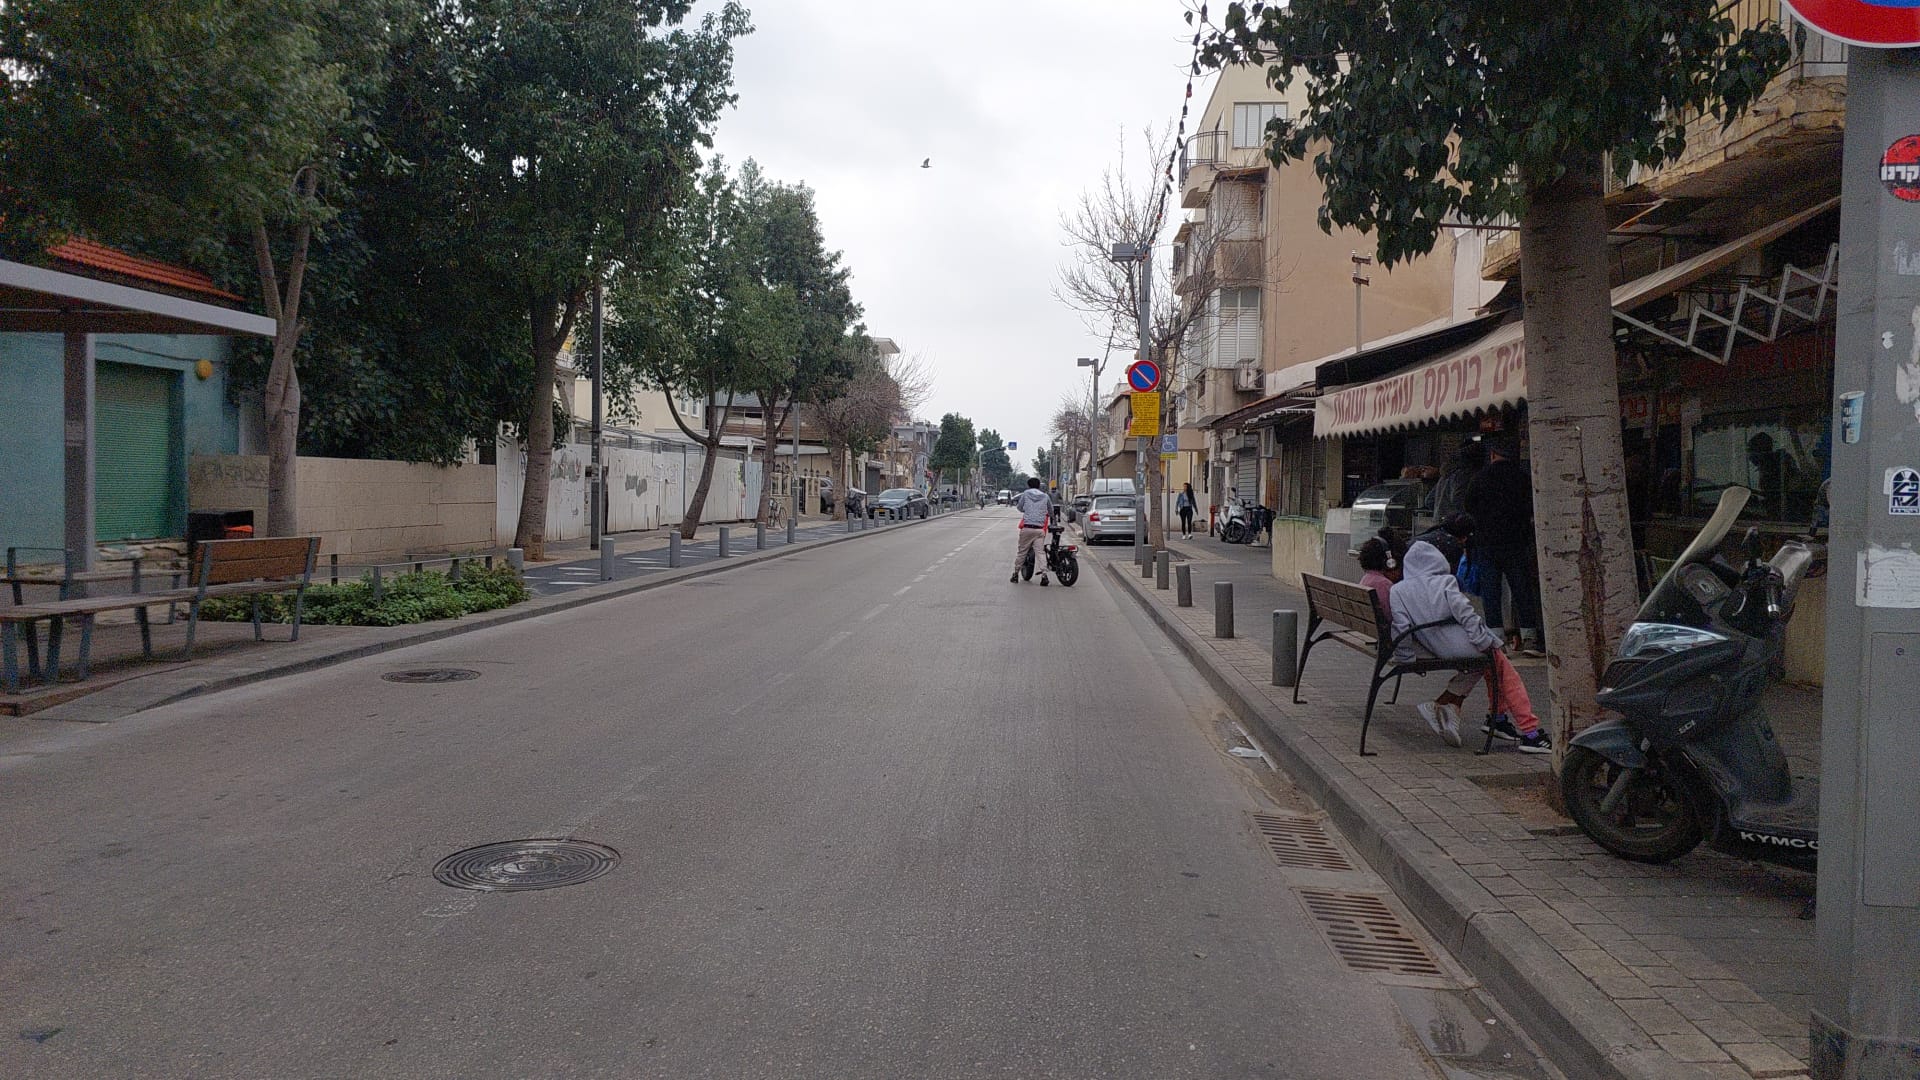 רחוב ריק בדרום תל אביב. התושבים לא ממהרים לקלפיות (צילום: הדס יום טוב)